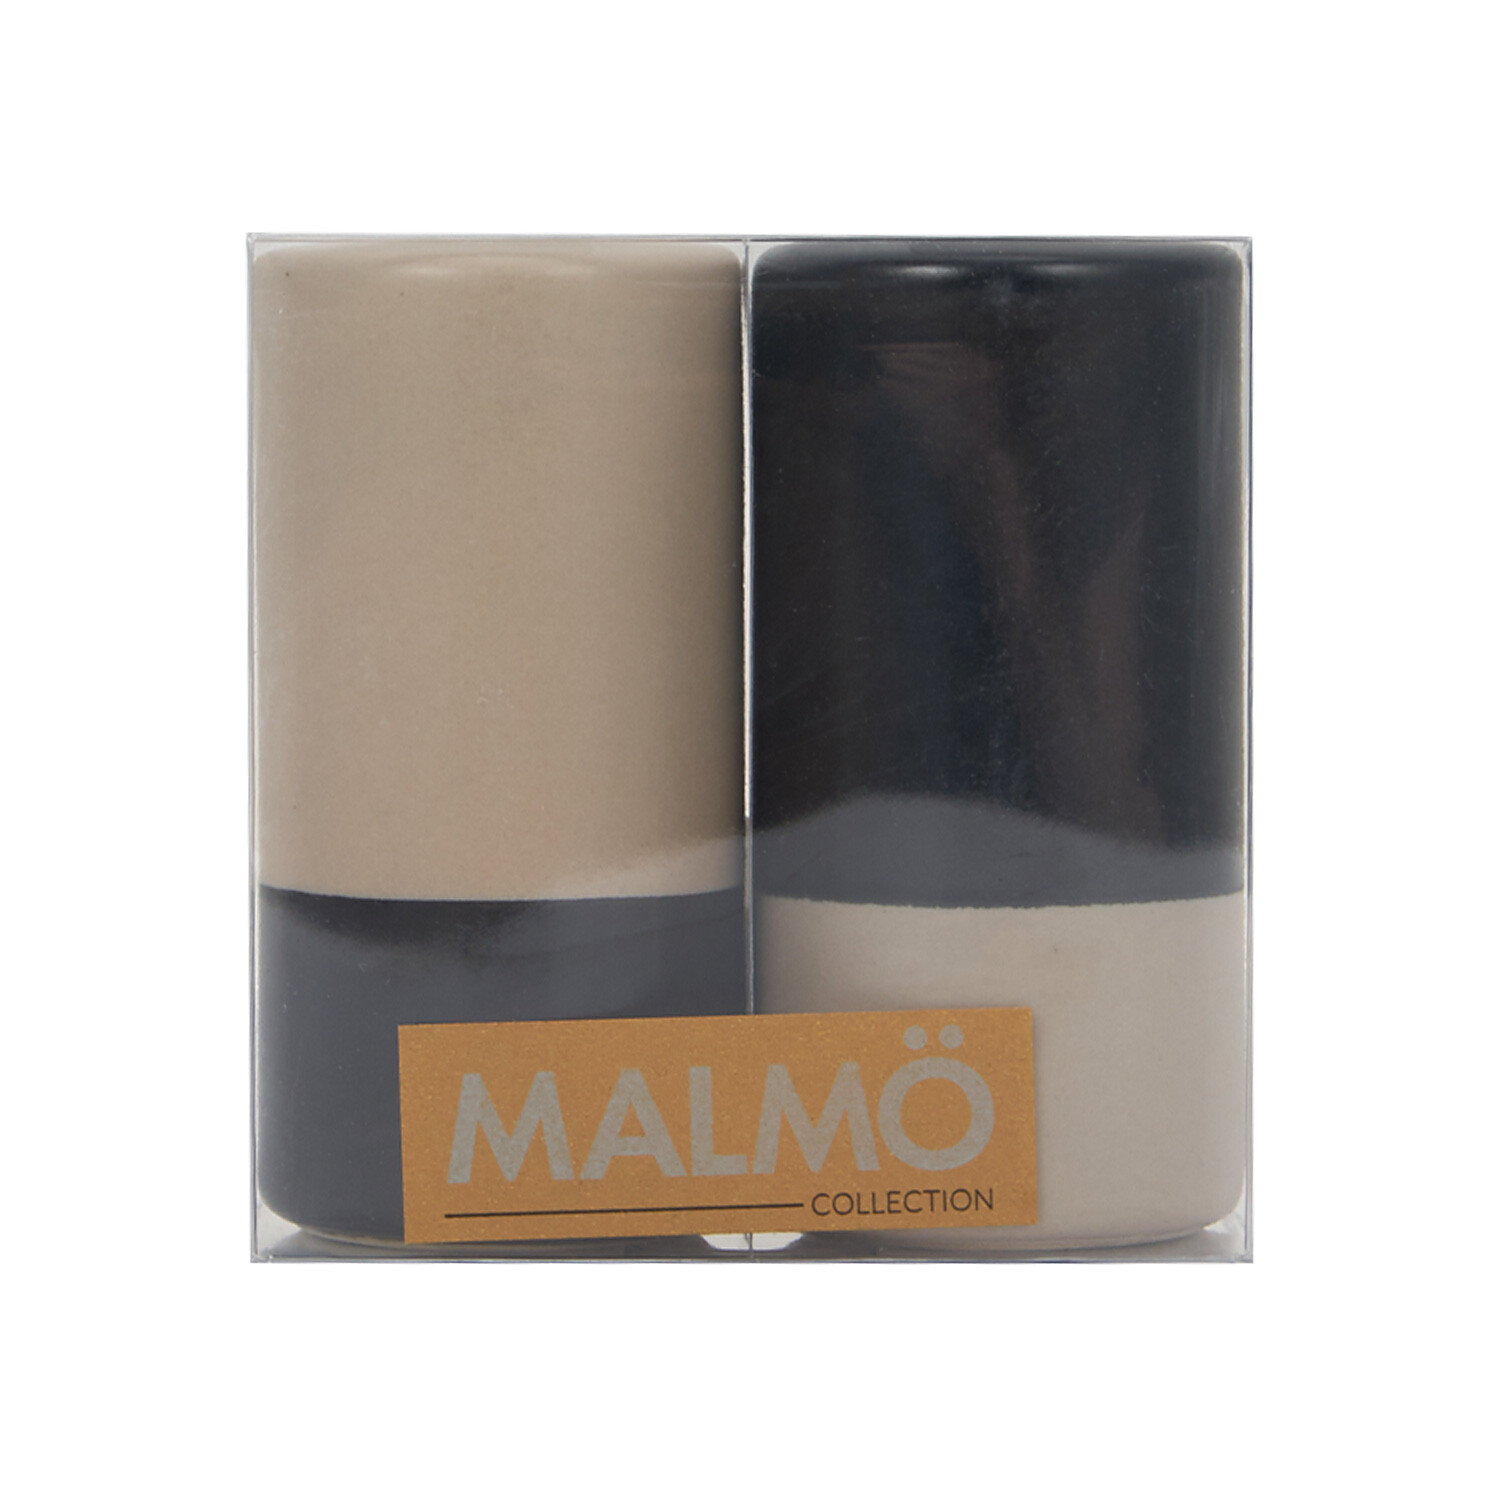 Malmo Salt & Pepper Shakers Image 1